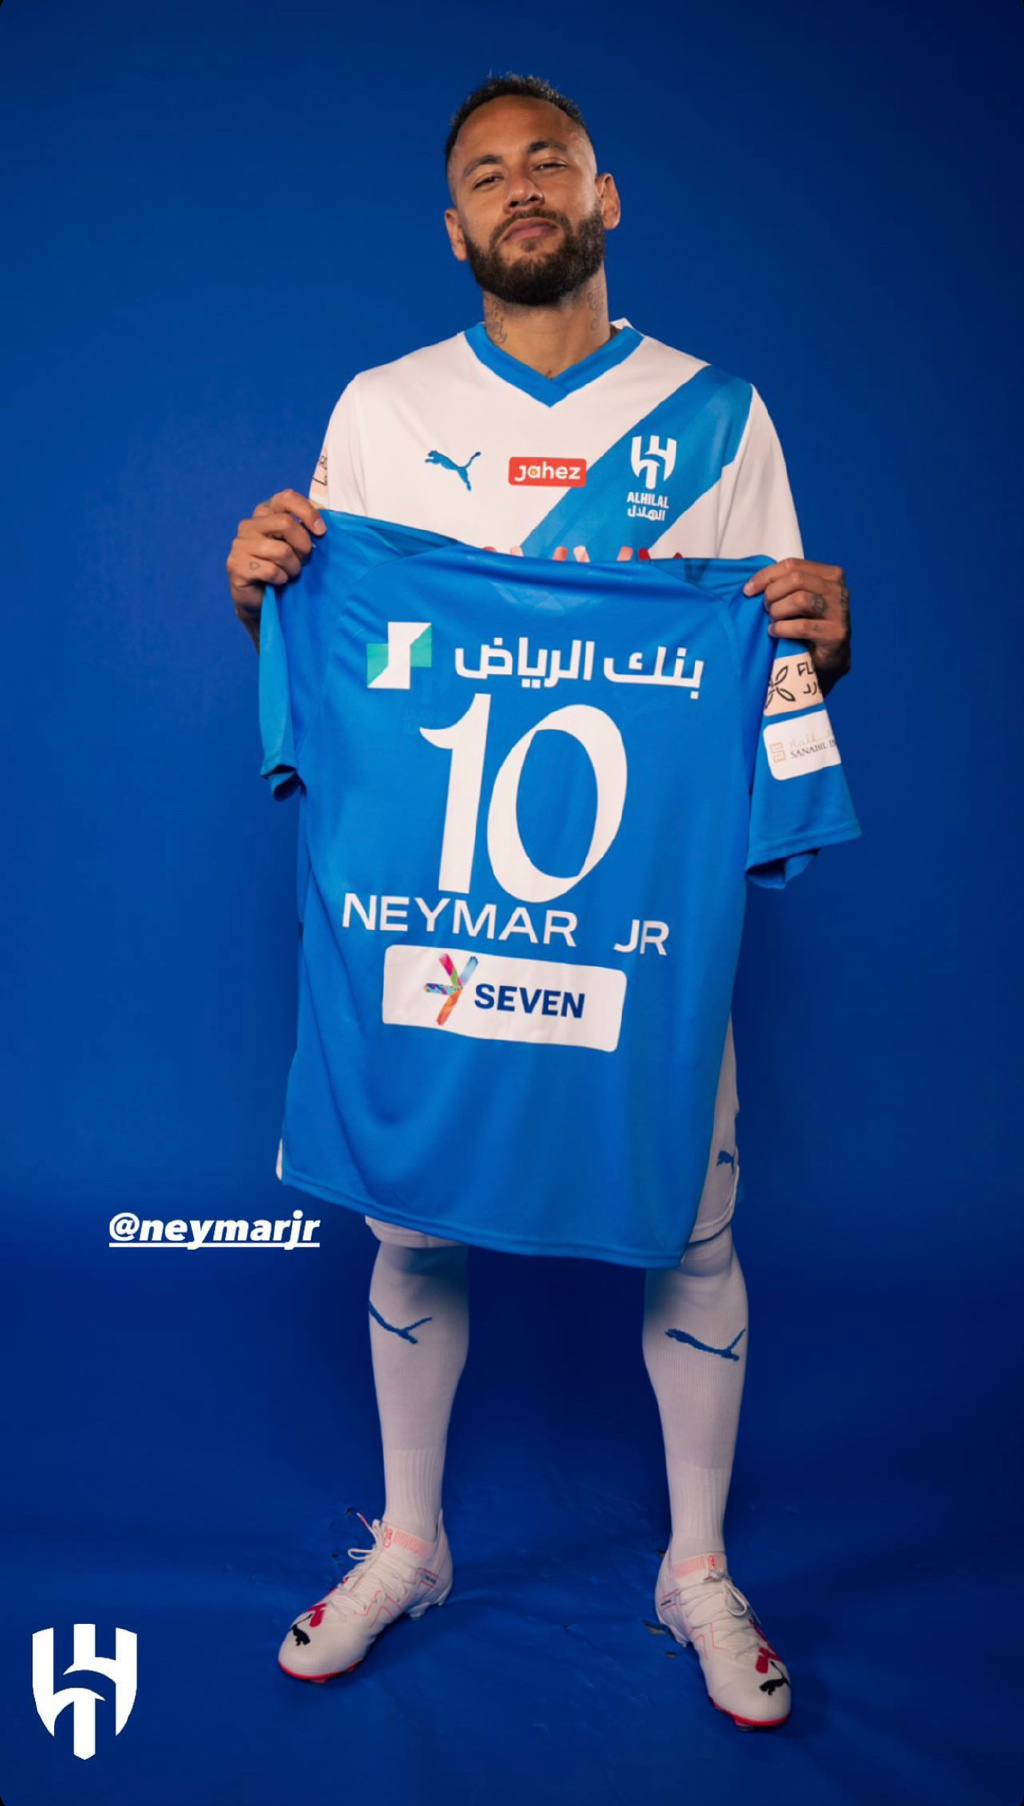 內馬爾也來到了沙特聯賽效力。